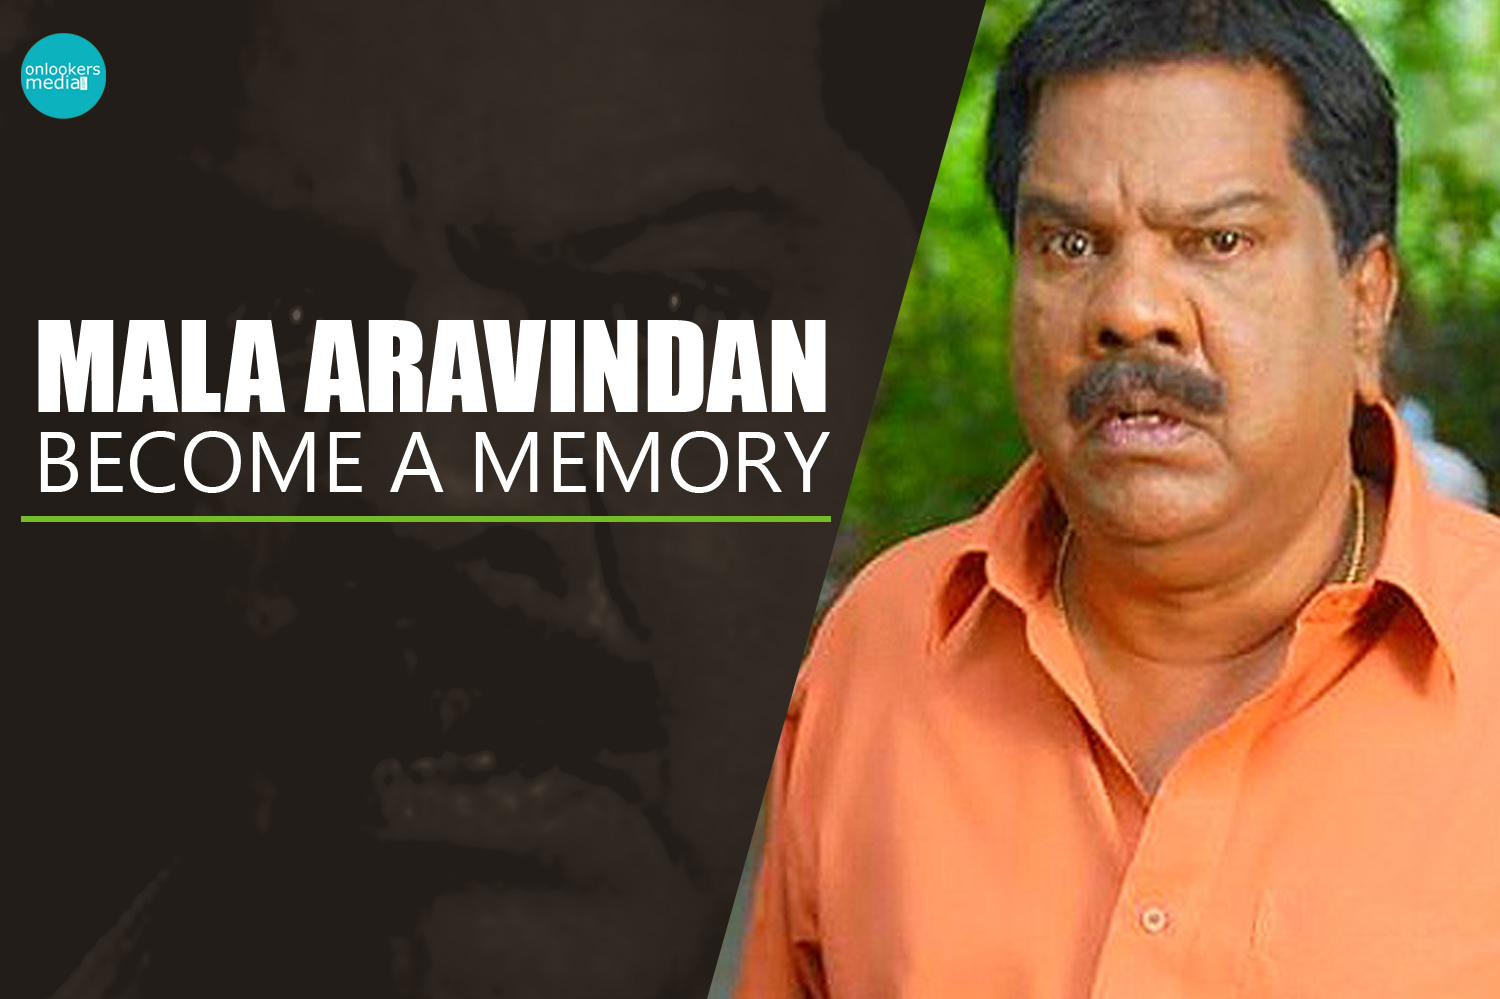 Mala Aravindan become a memory-Onlookers Media